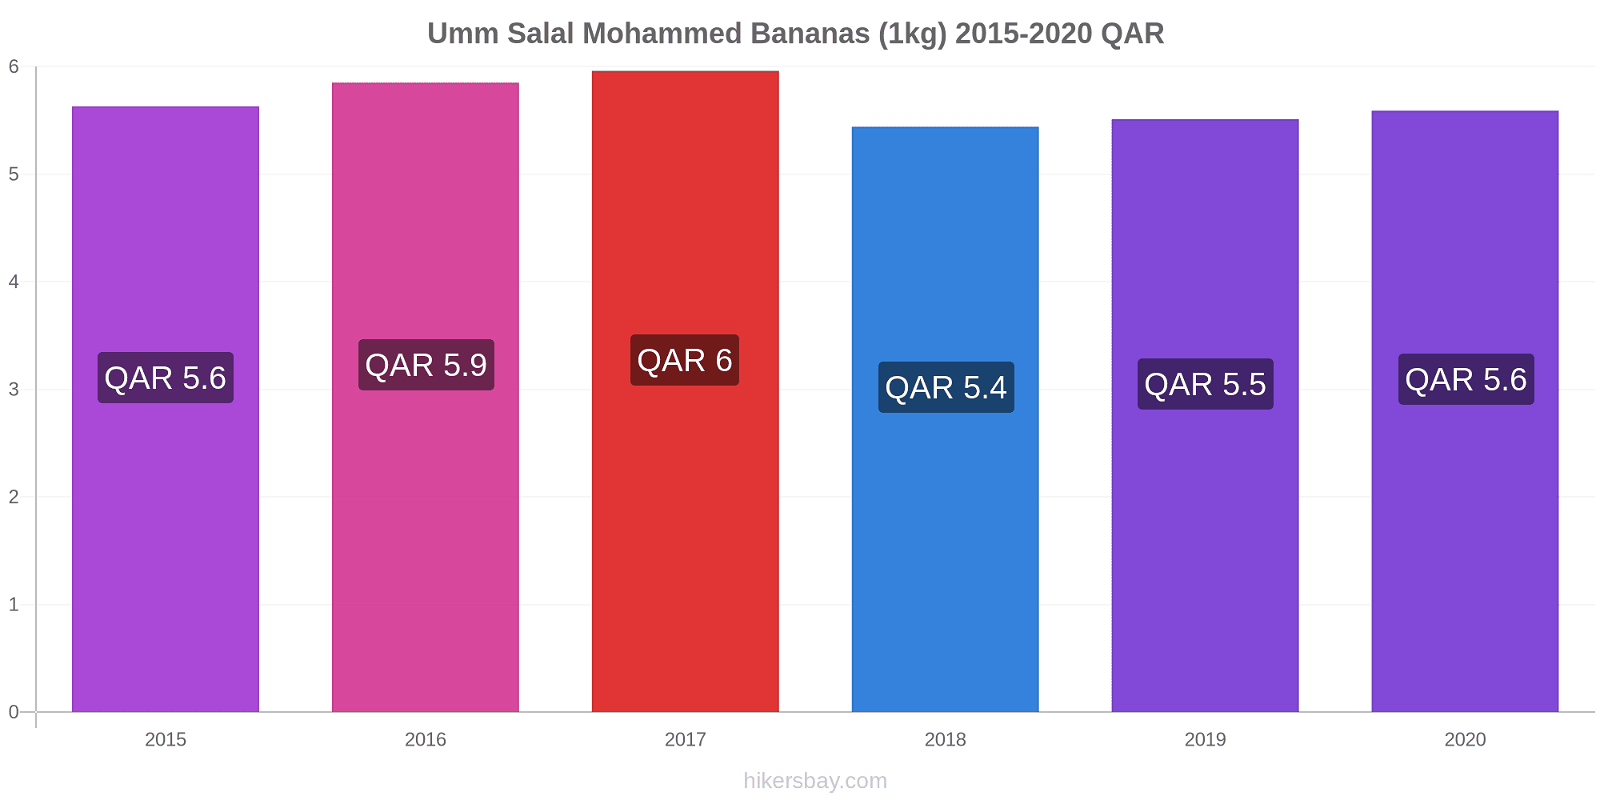 Umm Salal Mohammed price changes Bananas (1kg) hikersbay.com